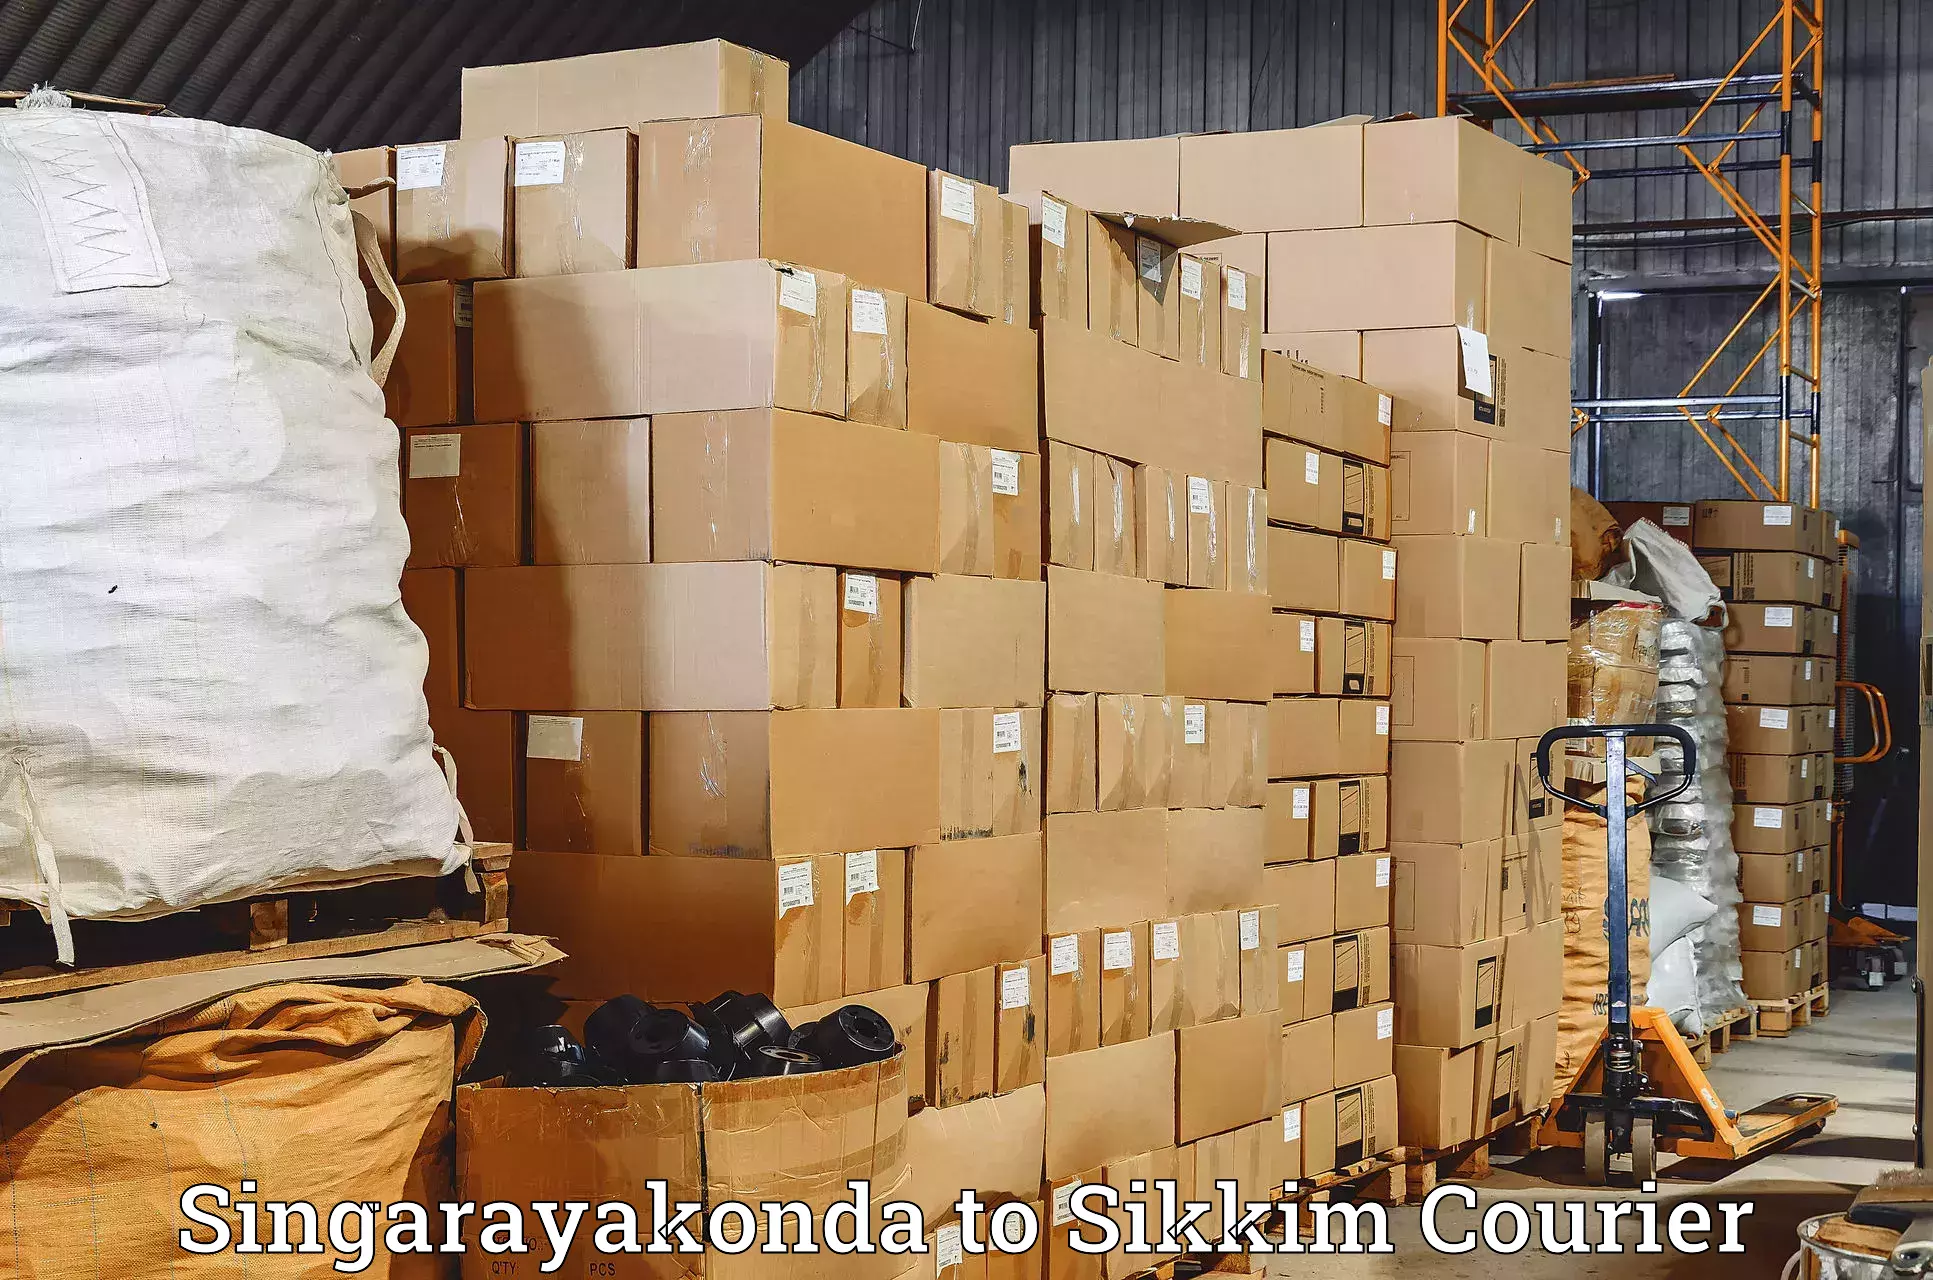 24/7 courier service Singarayakonda to Singtam